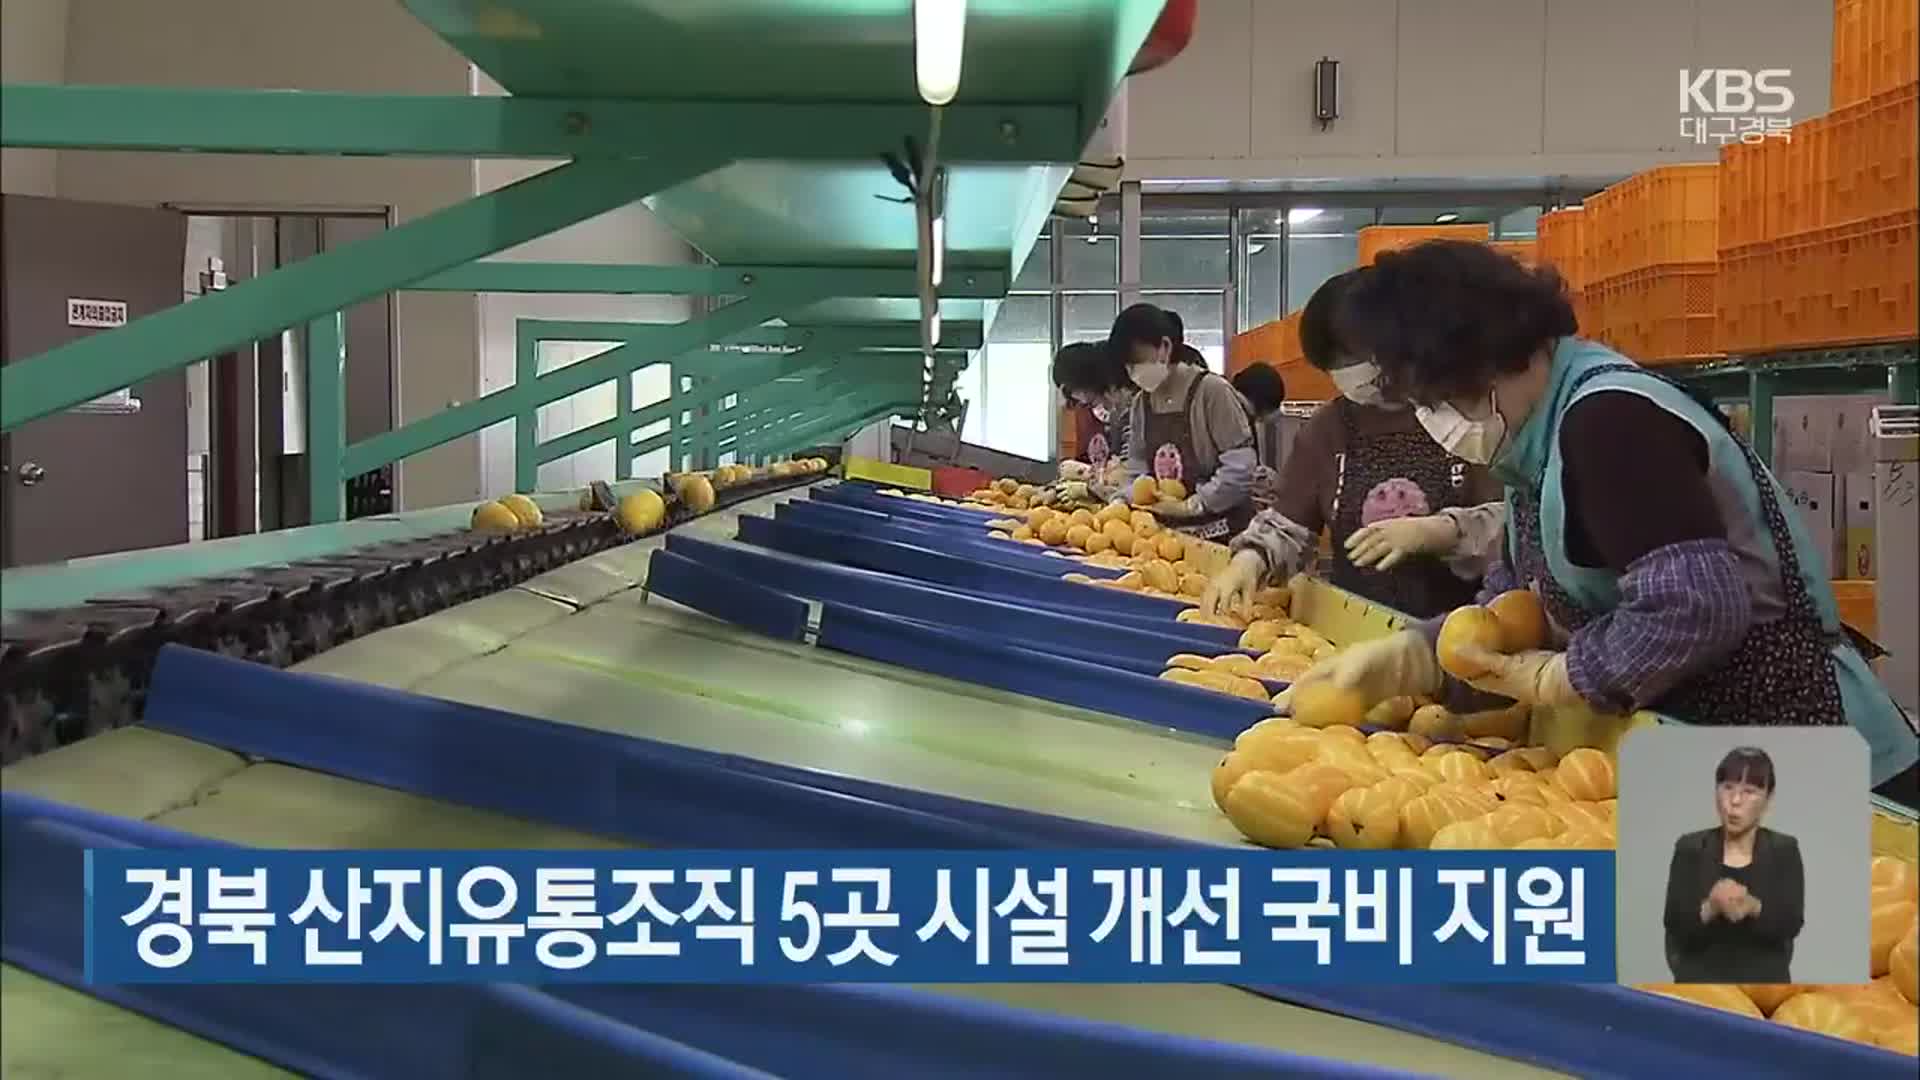 경북 산지유통조직 5곳 시설 개선 국비 지원